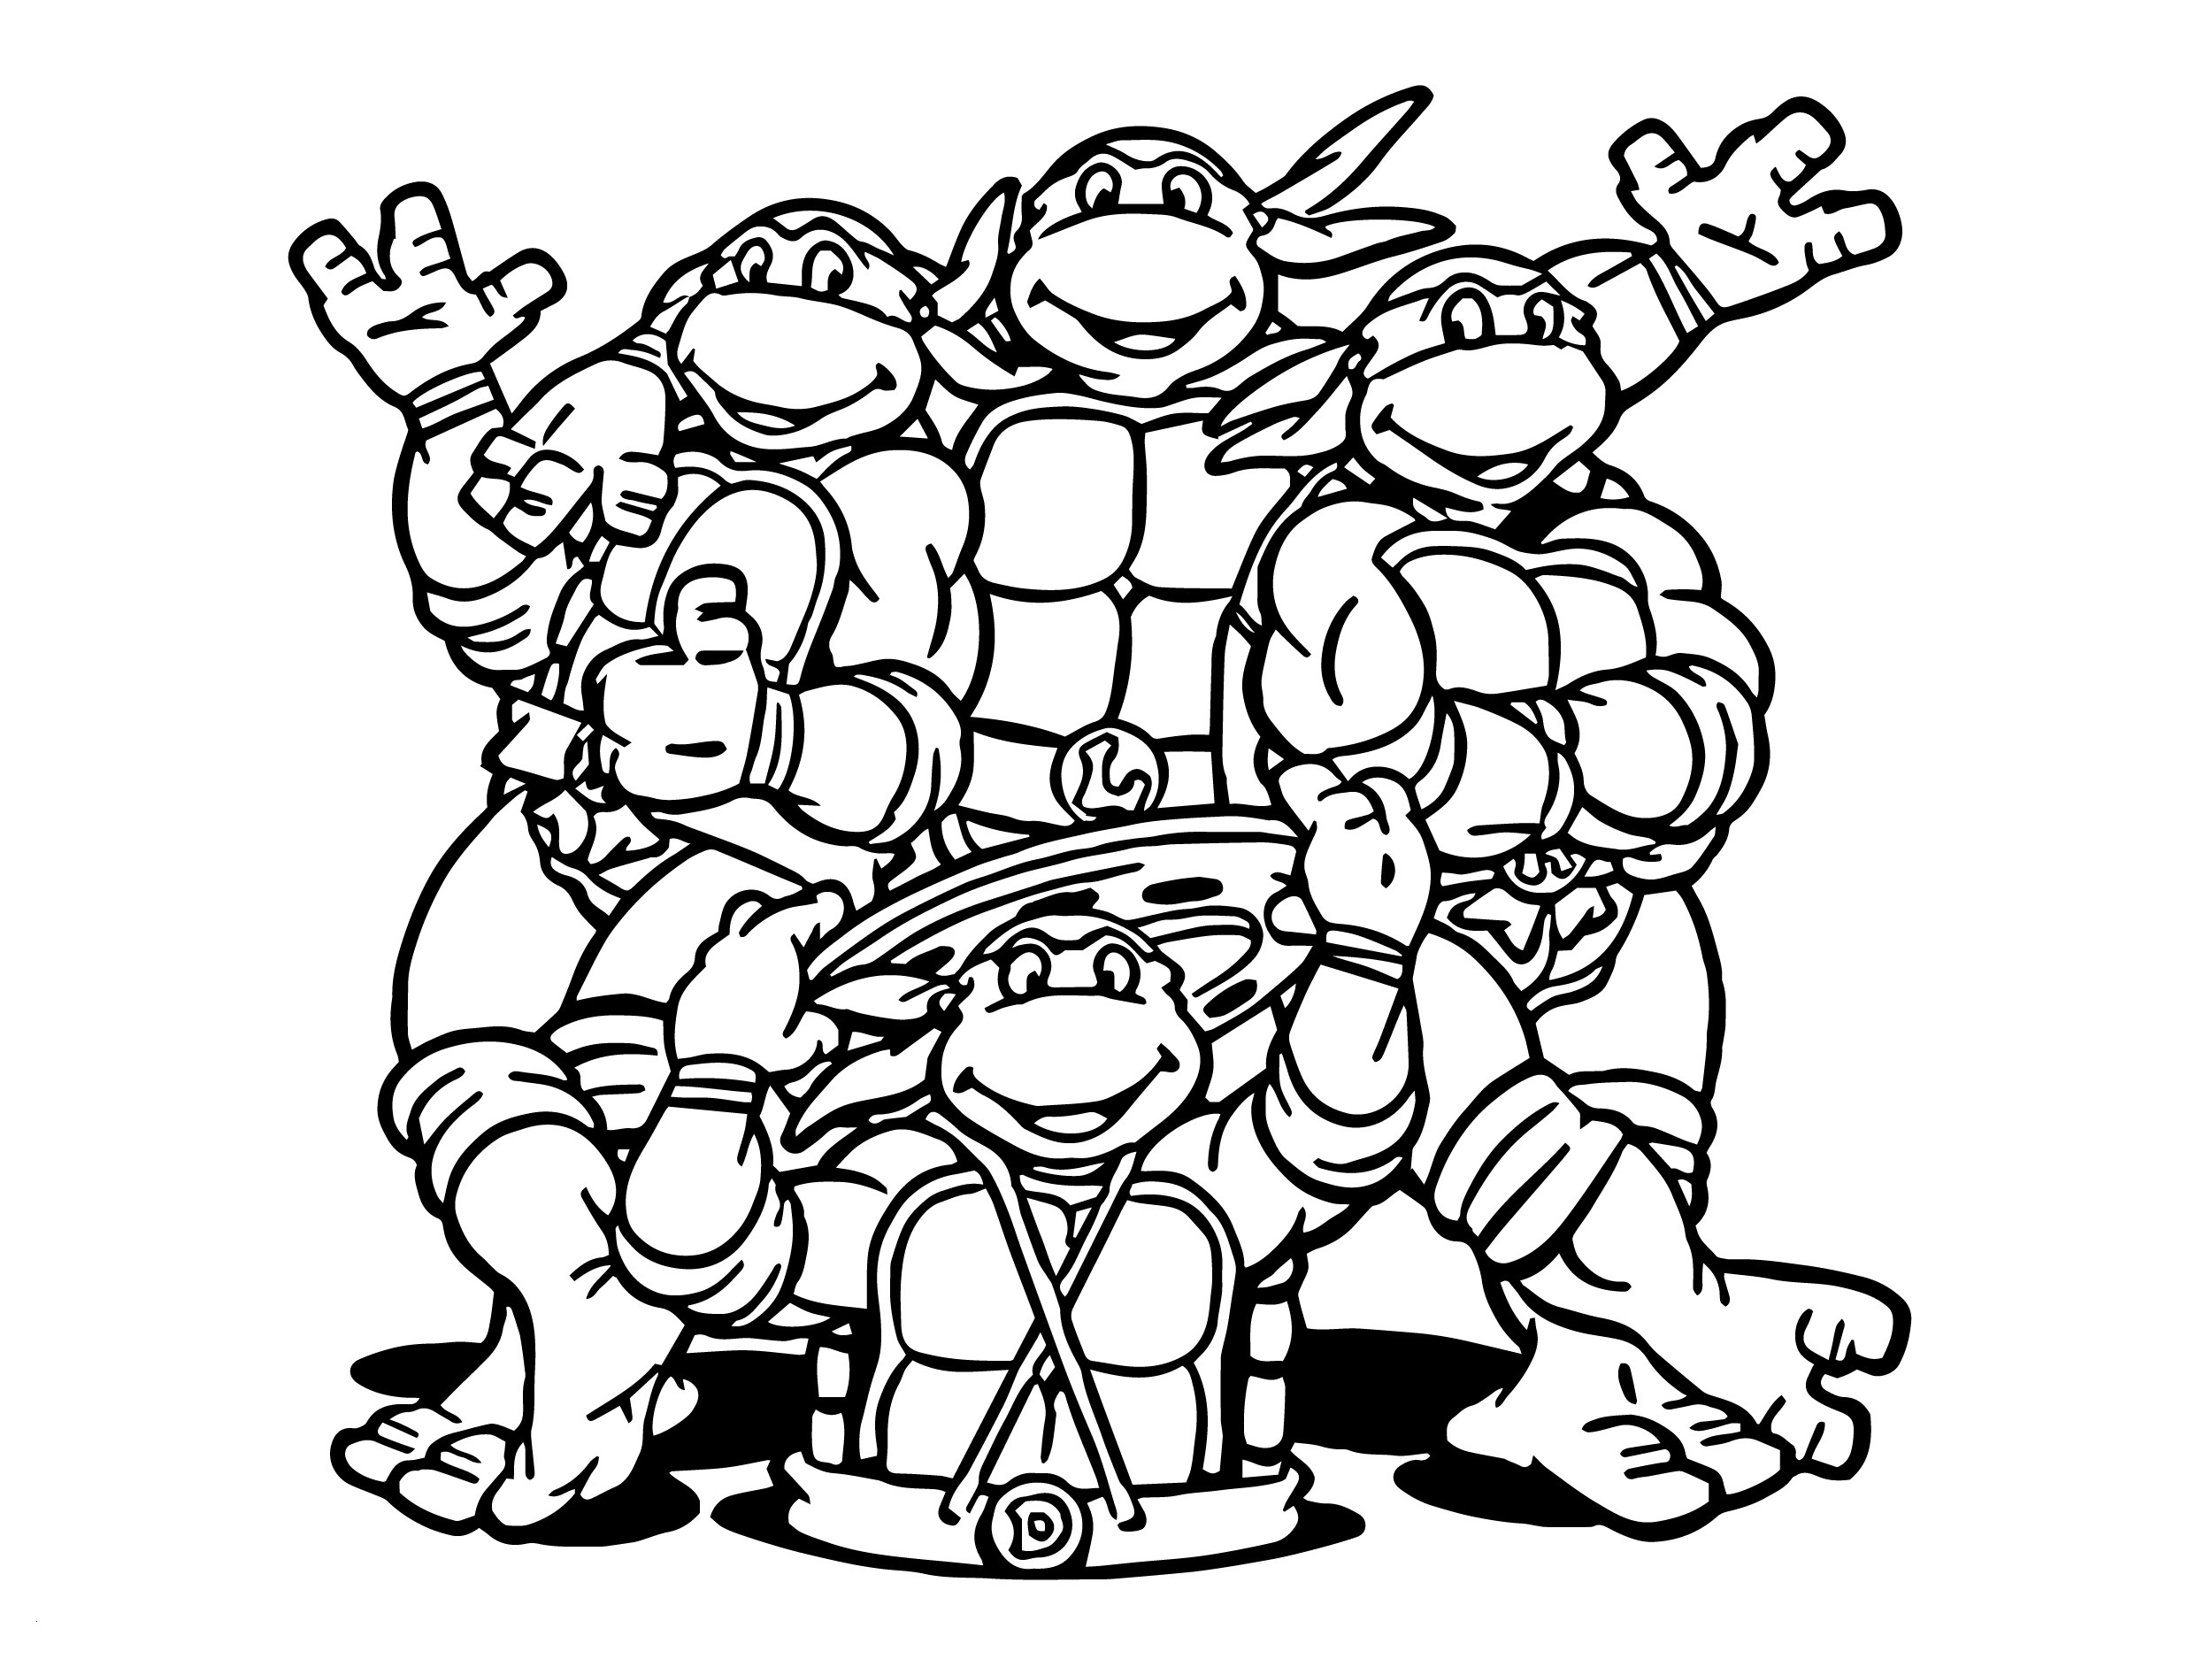 Download Teenage Mutant Ninja Turtles Coloring Pages - Best ...